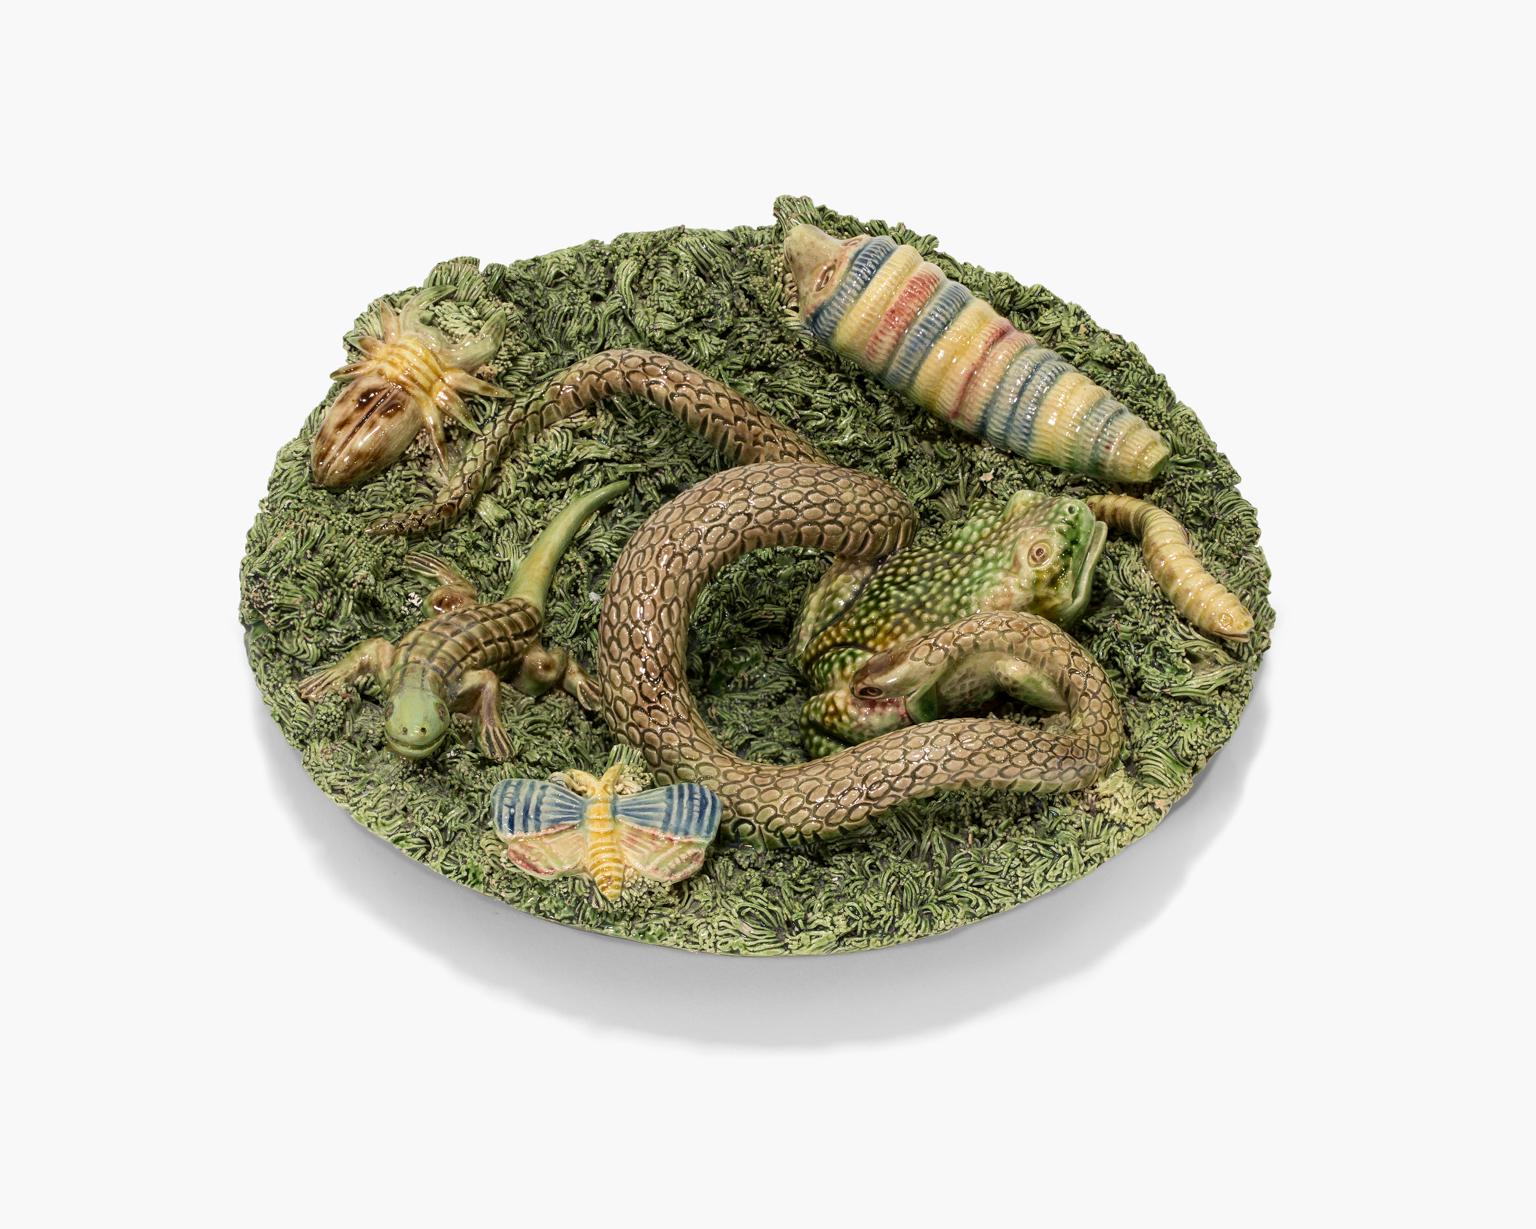 Schale aus Majolika mit Schlangen, Spinnen, Frosch, Schmetterling und Schmetterling aus Eidechse von Palissy – Sculpture von Jose A. Cunha